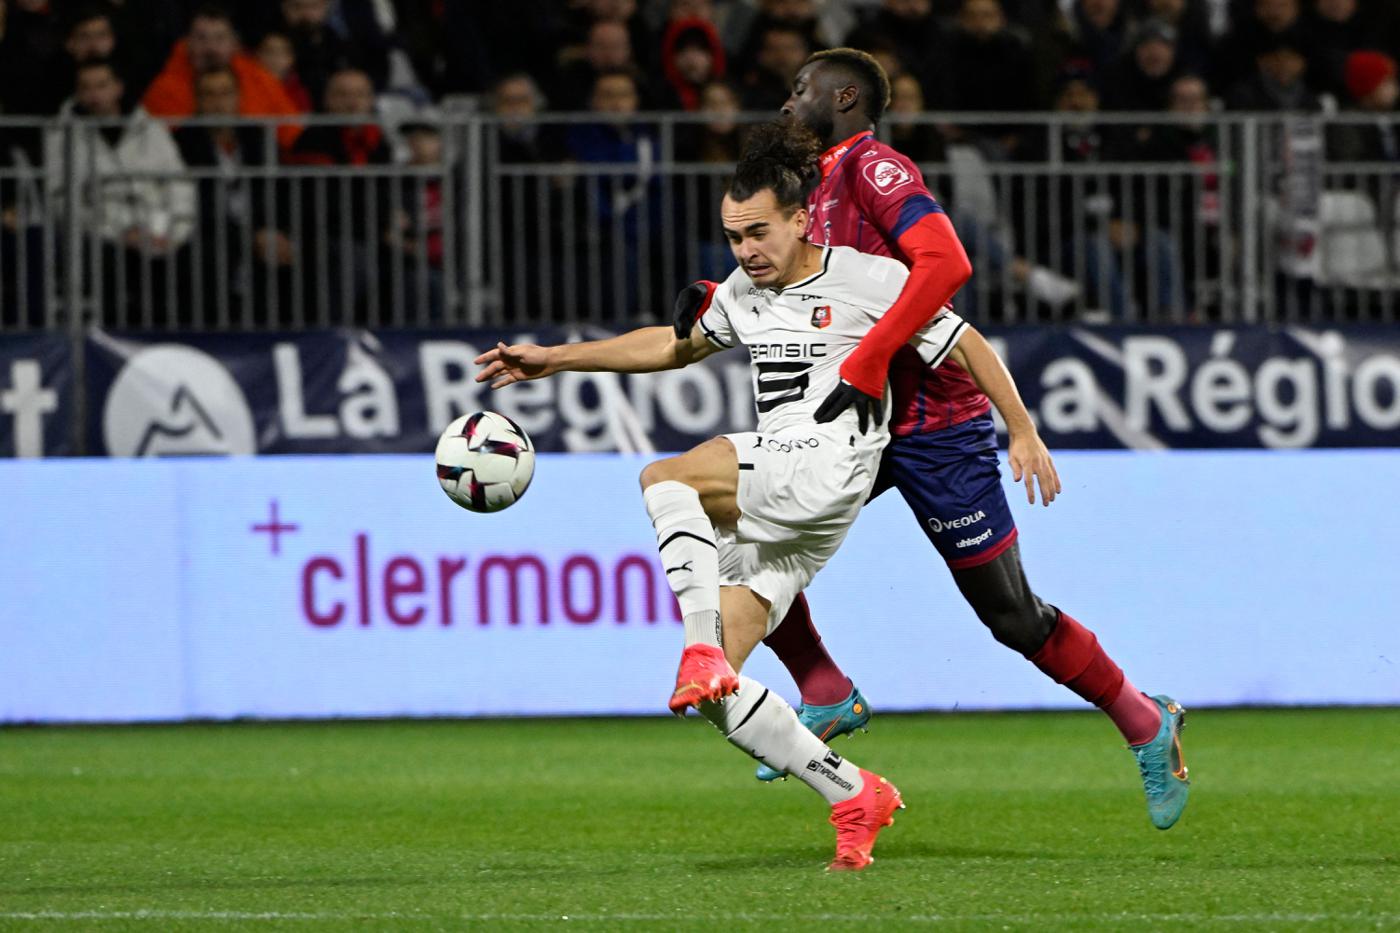 "Rennes" - "Clermont" - 2:0. Französische Meisterschaft, 24. Runde. Spielbericht, Statistiken